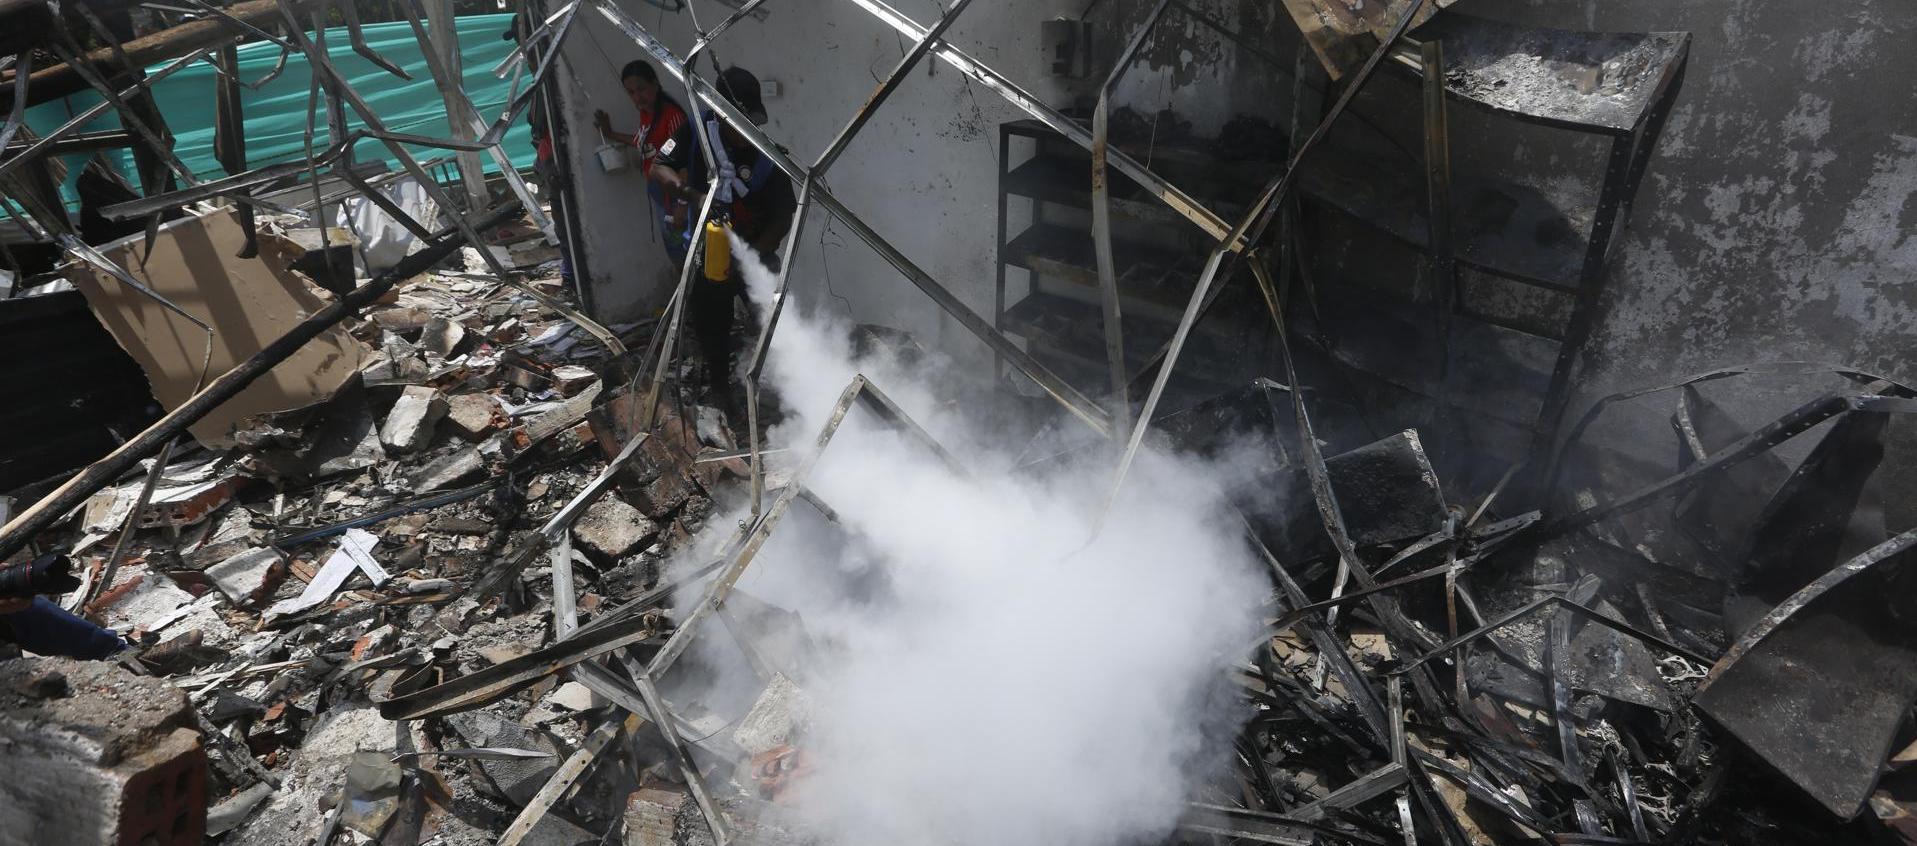 Un hombre usa un extintor en los escombros de una vivienda destruida por un ataque con carro bomba en el Cauca